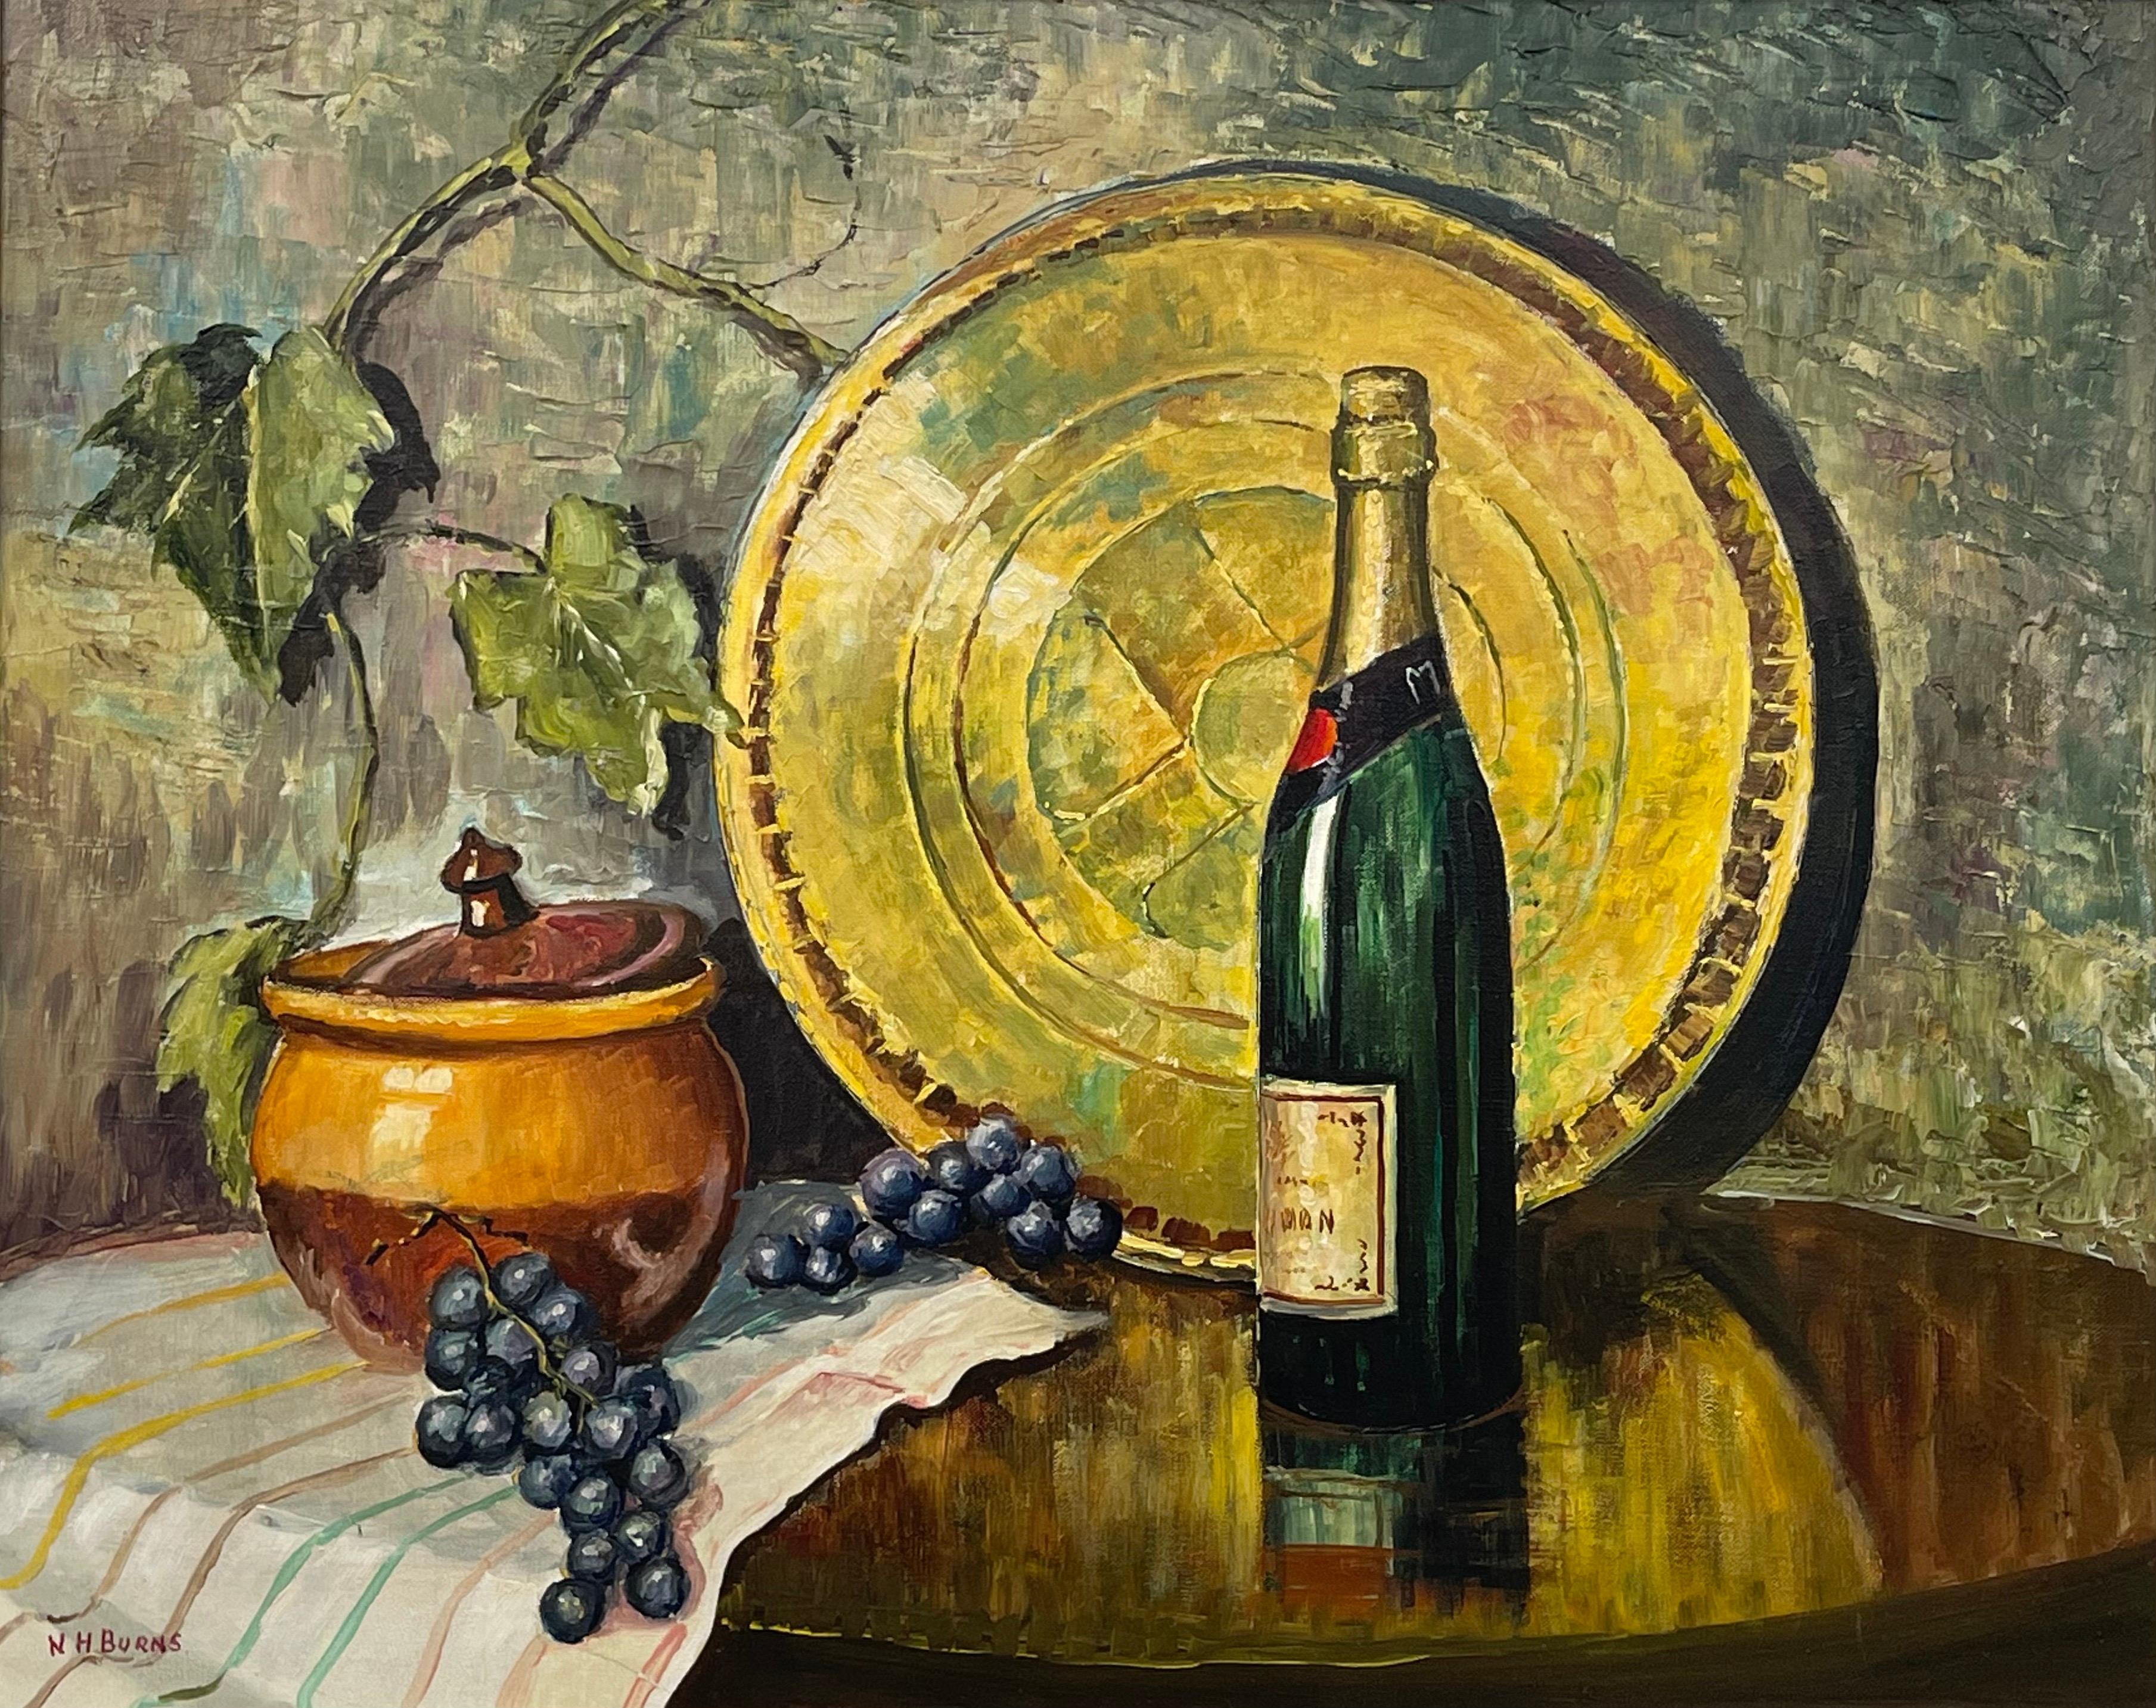 Nature morte à la bouteille de champagne et au raisin, peinture à l'huile d'un artiste du 20e siècle - Réalisme Painting par William Henry Burns